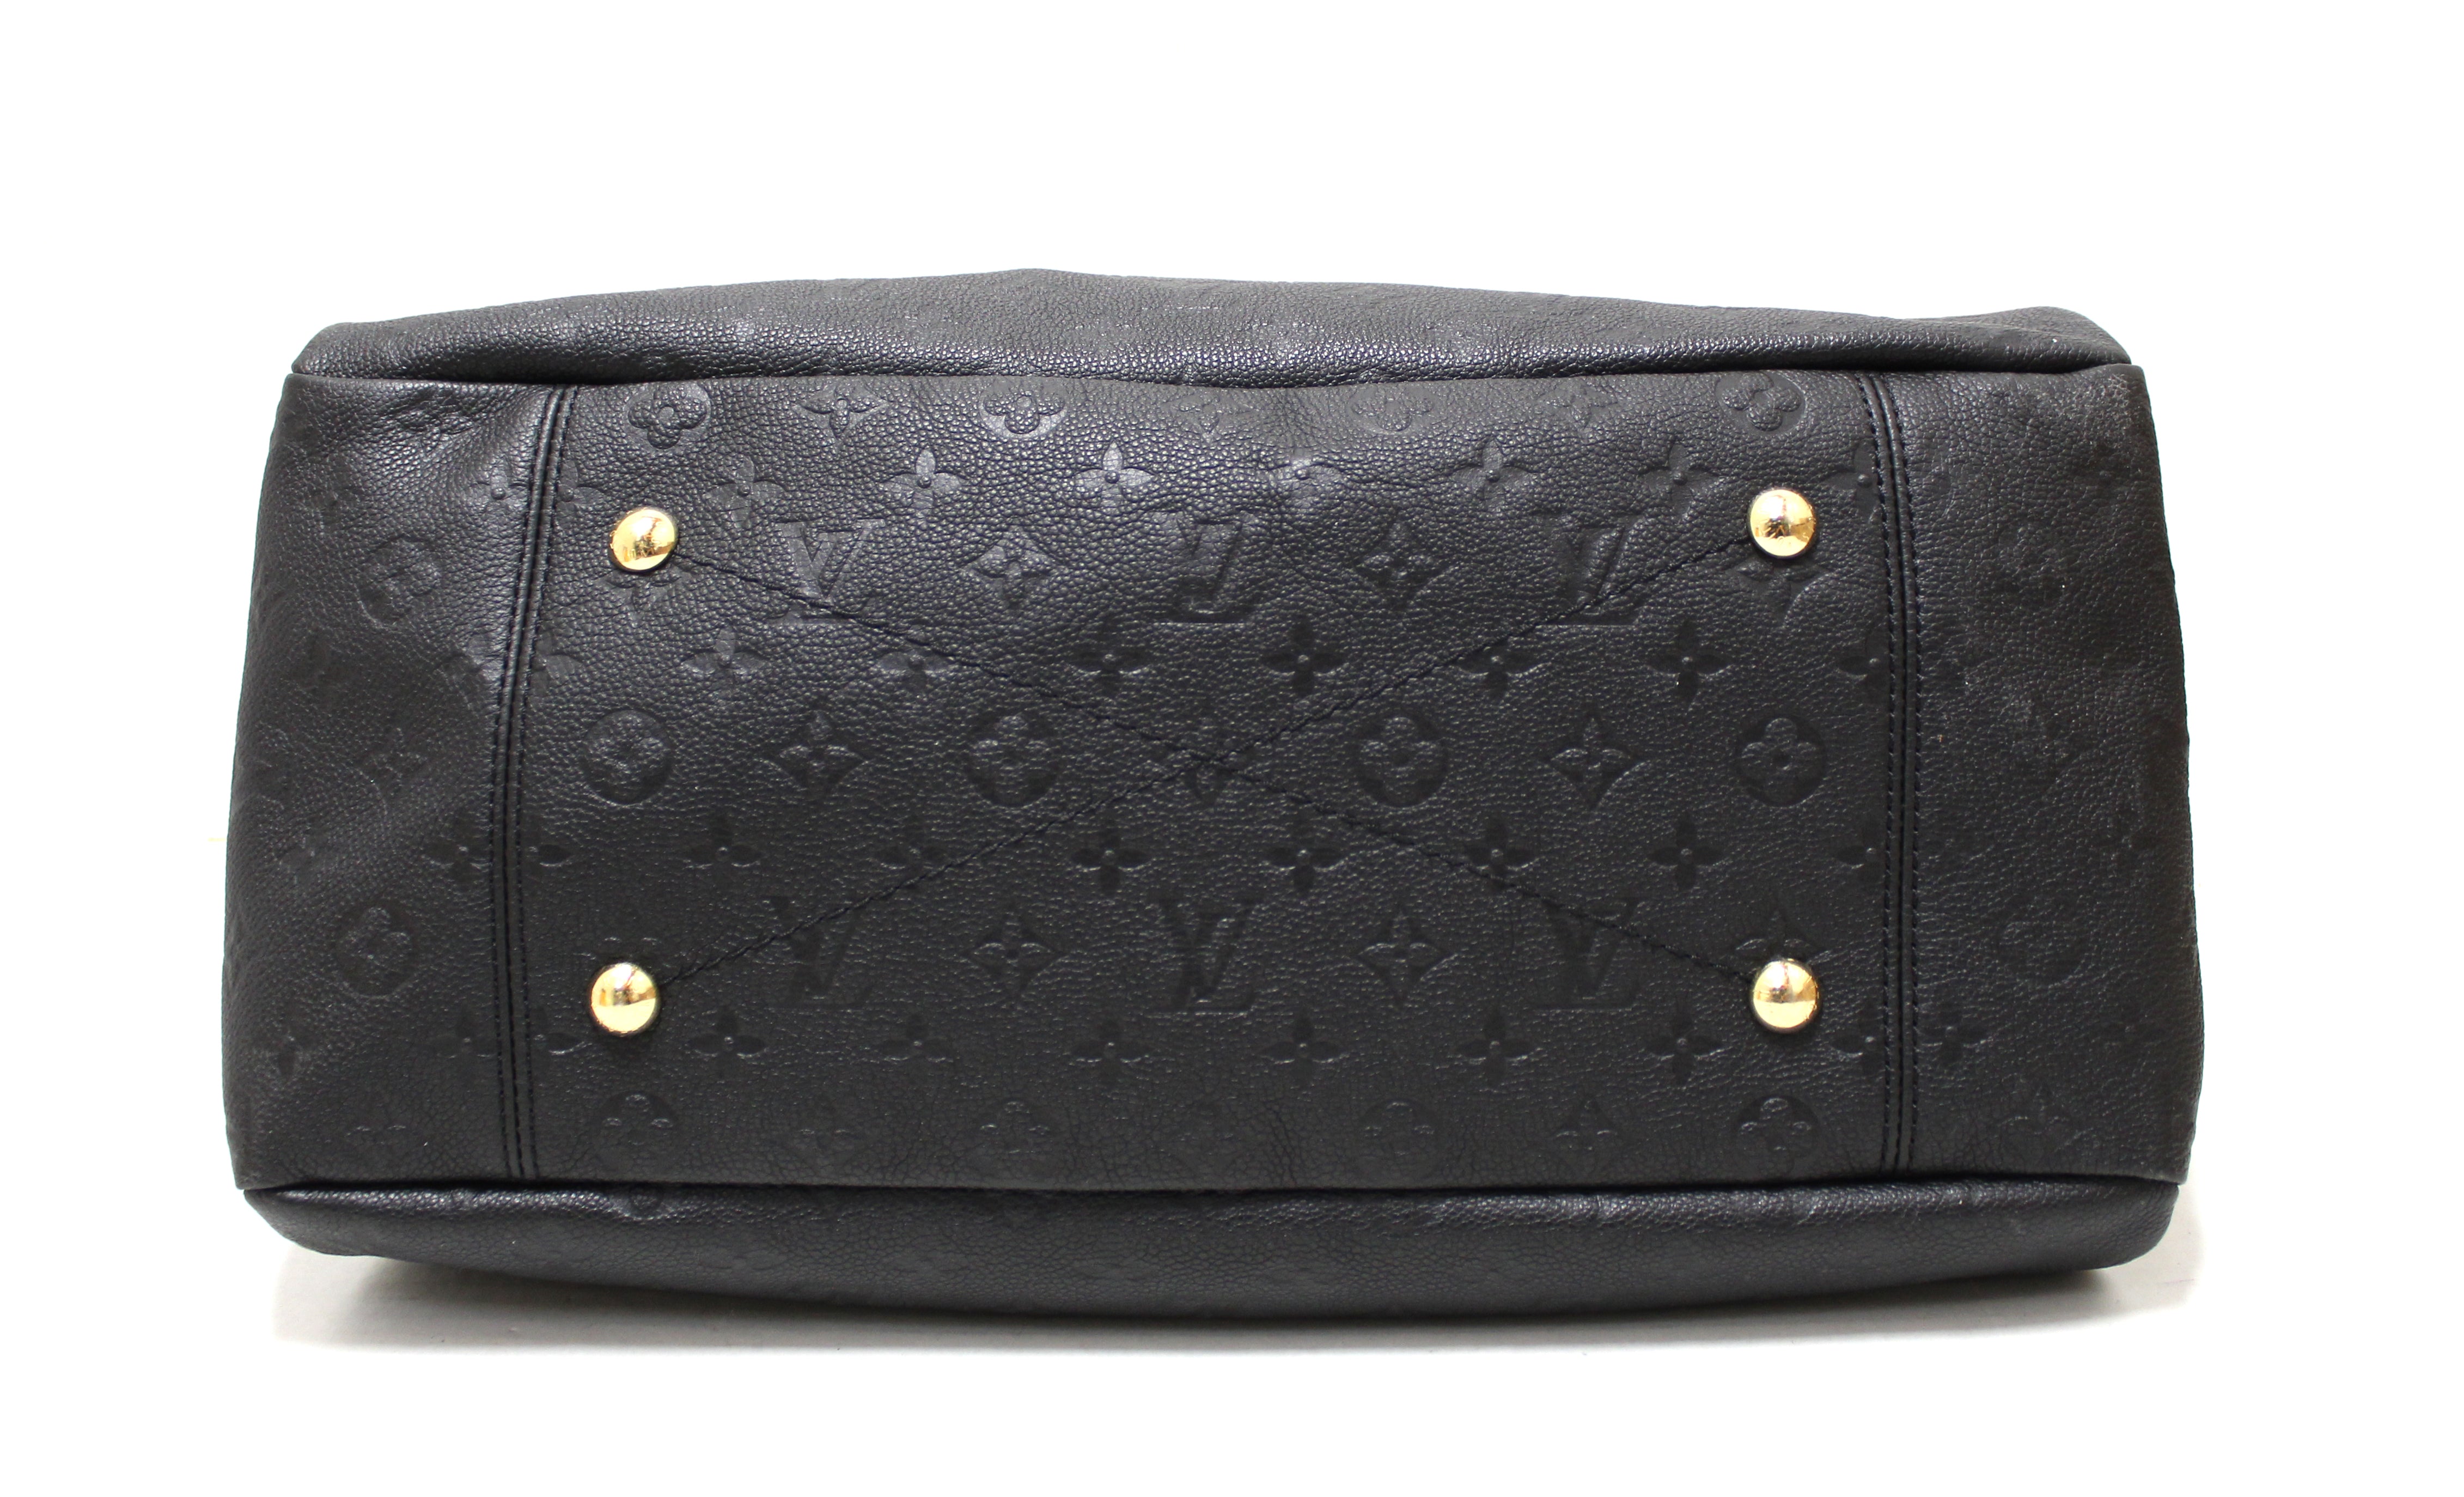 Authentic Louis Vuitton Black Empreinte Leather Artsy MM Hobo Bag